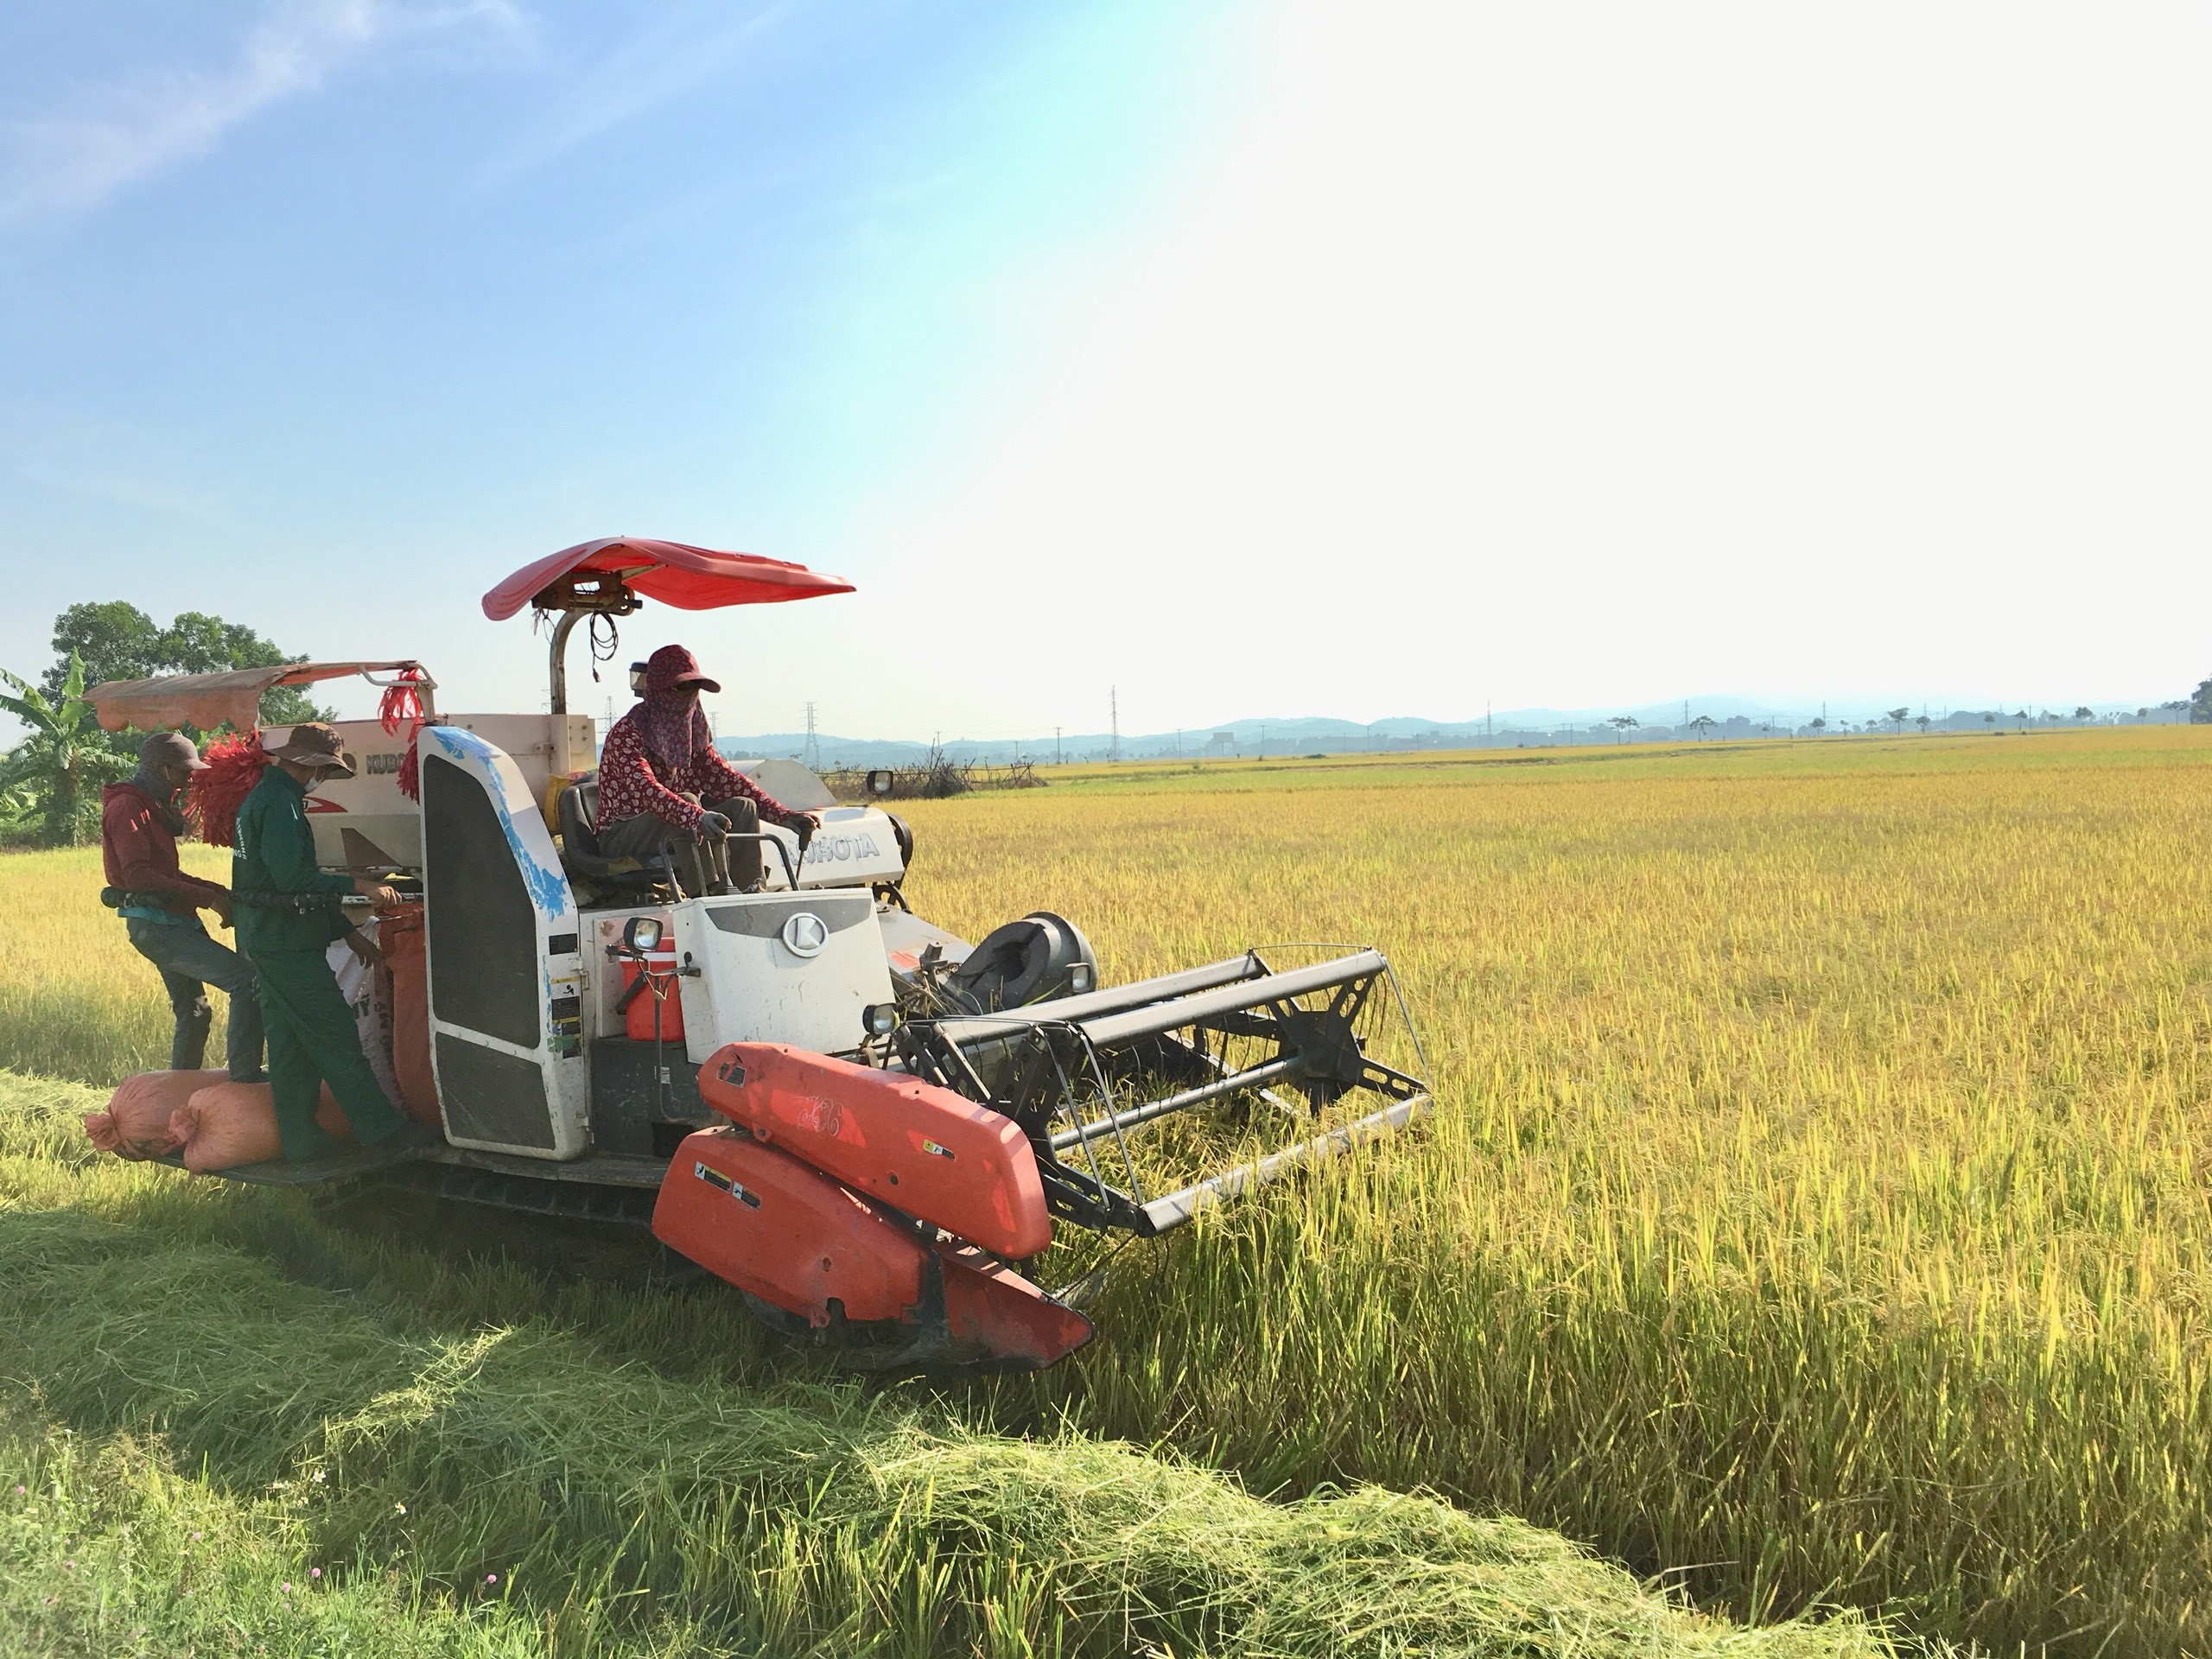 Máy gặt đập liên hoàn trên đồng lúa xóm Hội Tâm xã Thịnh Sơn, Đô Lương. Ảnh Ngọc Phương